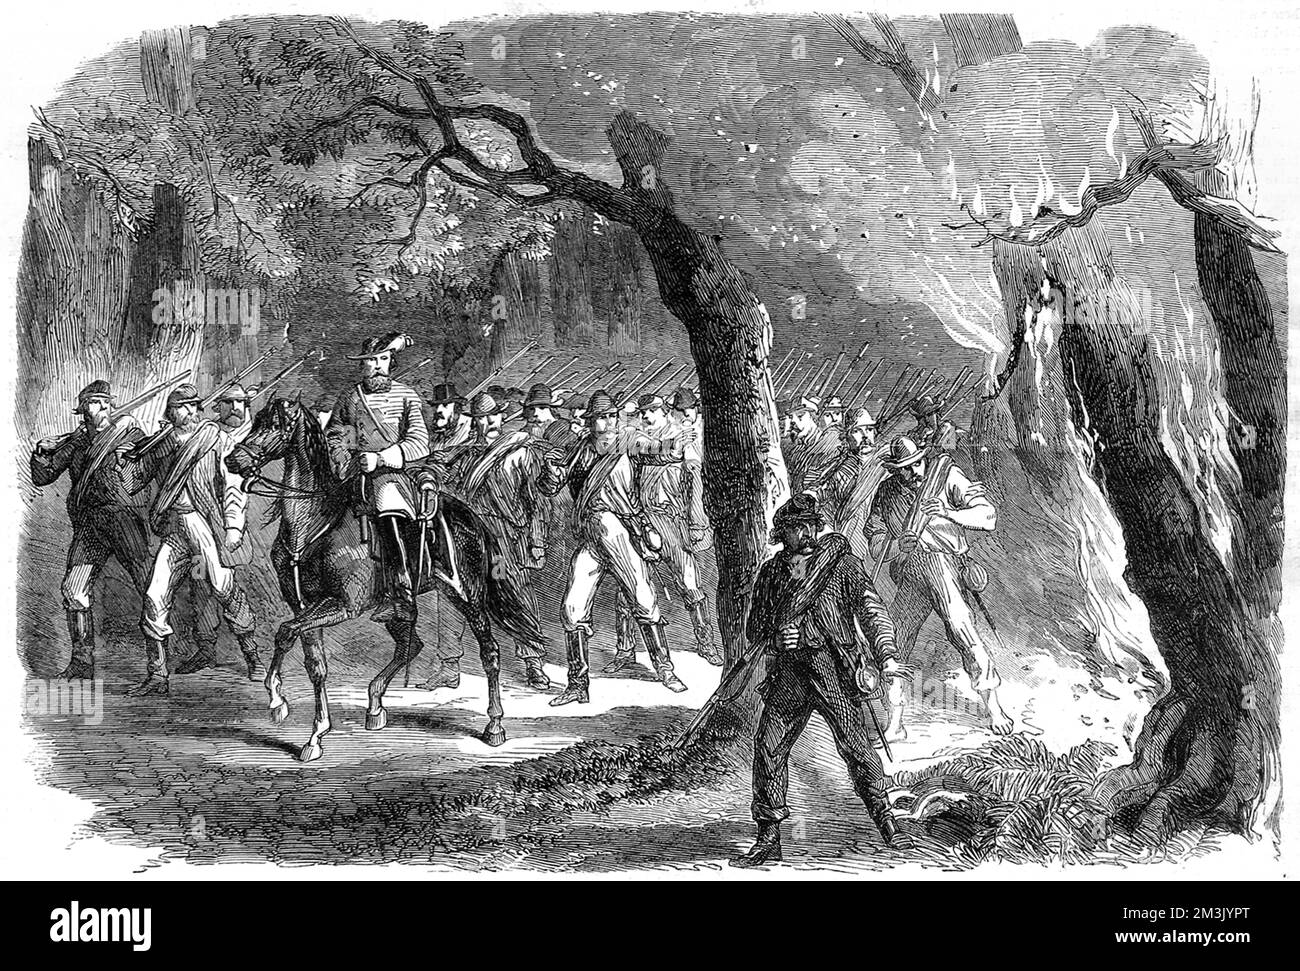 Eine dramatische Nachtszene mit Säulen konföderierter Truppen, die durch einen Wald marschieren, von dem ein Teil in Flammen steht. Datum: 1864 Stockfoto